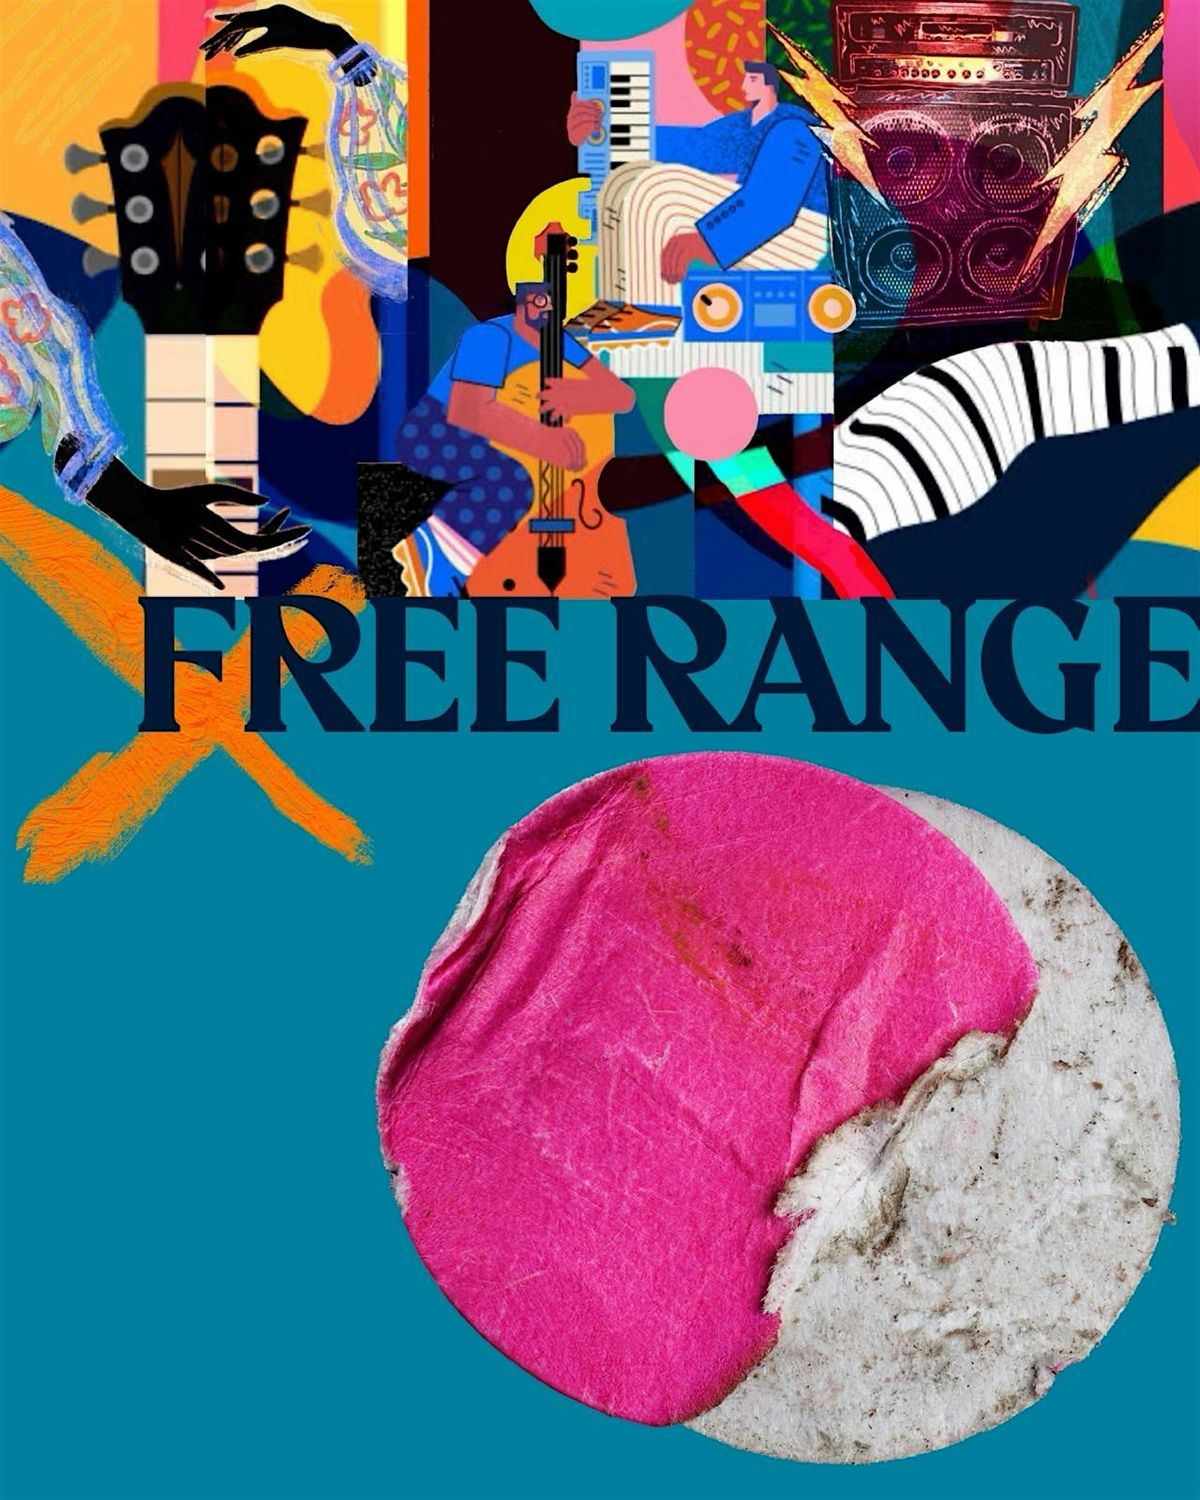 Free Range Music Series!